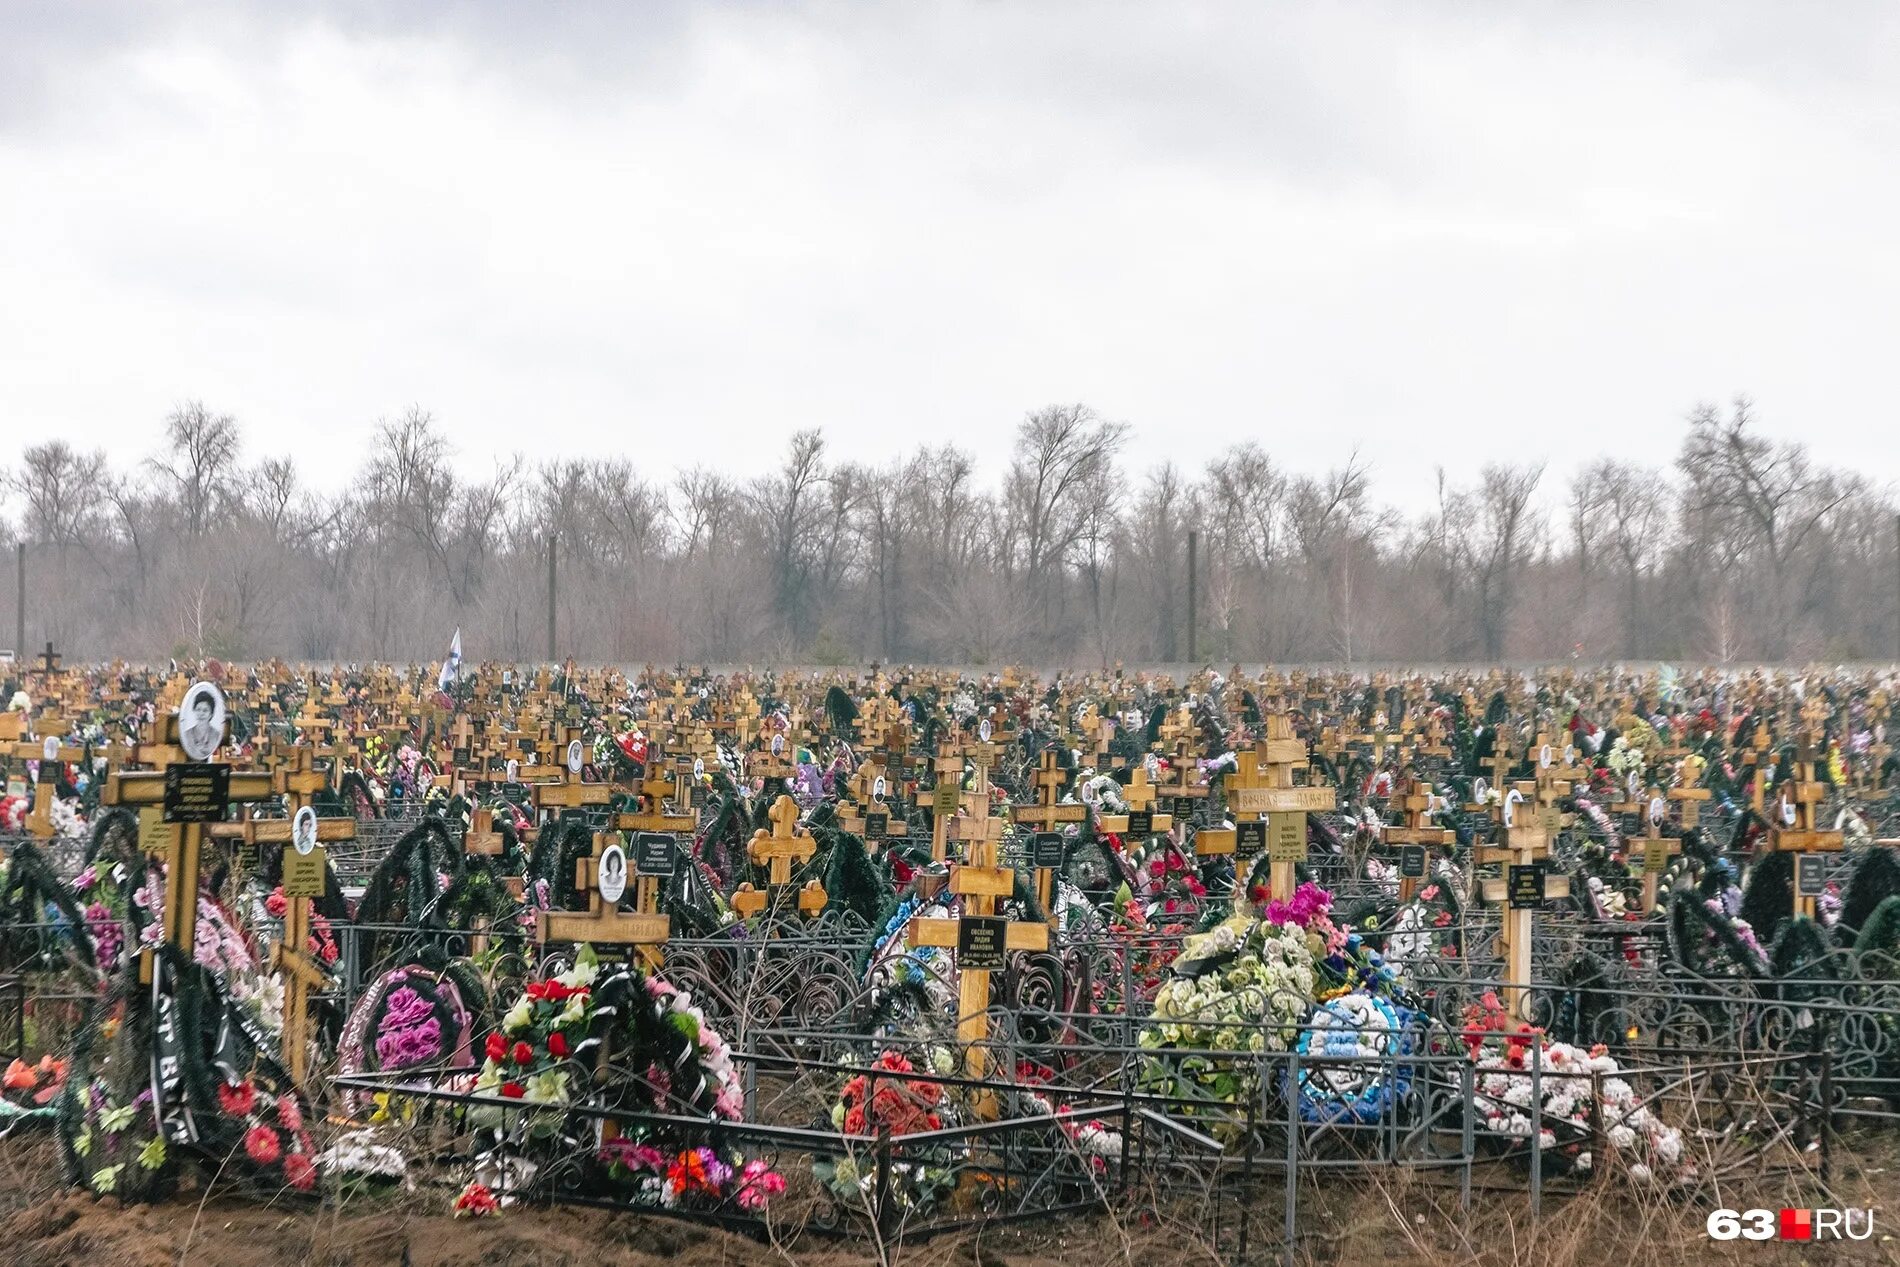 Сколько людей похоронено на кладбище. Кладбище. Российское кладбище. Кладбище людей в России.